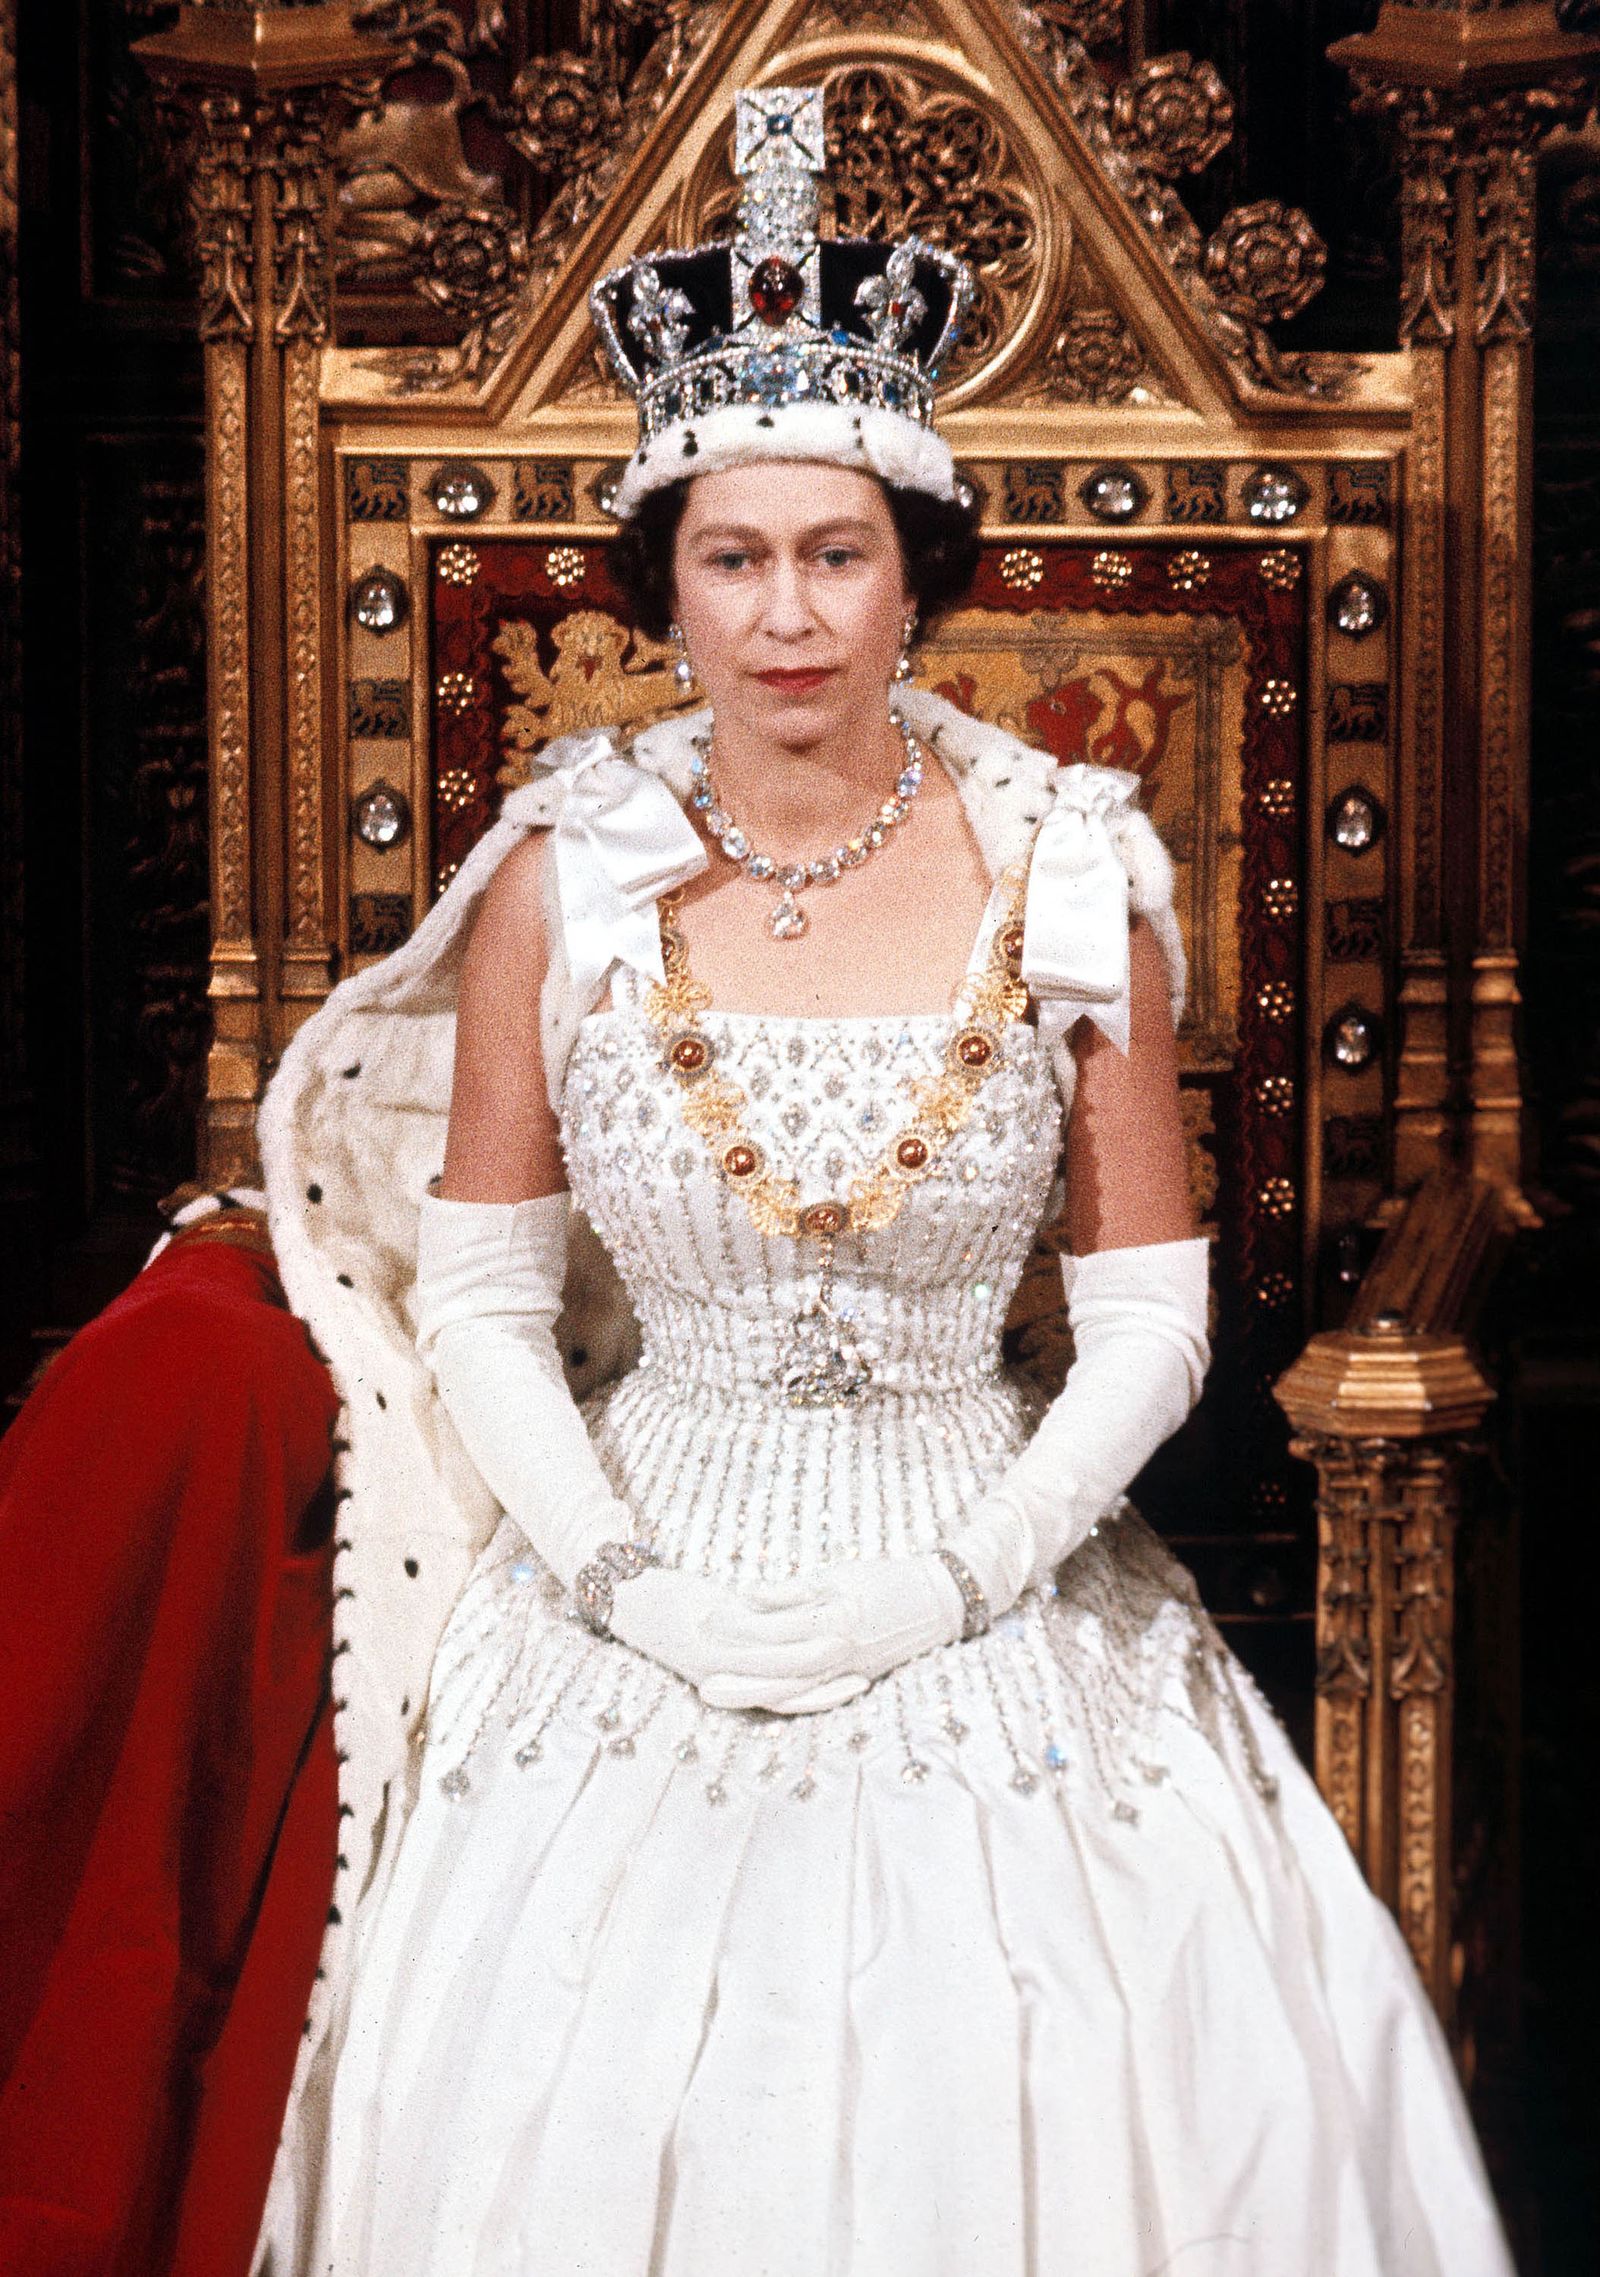 Nữ hoàng Elizabeth II được nhìn thấy trong lễ khai mạc Quốc hội vào tháng 4/1966.